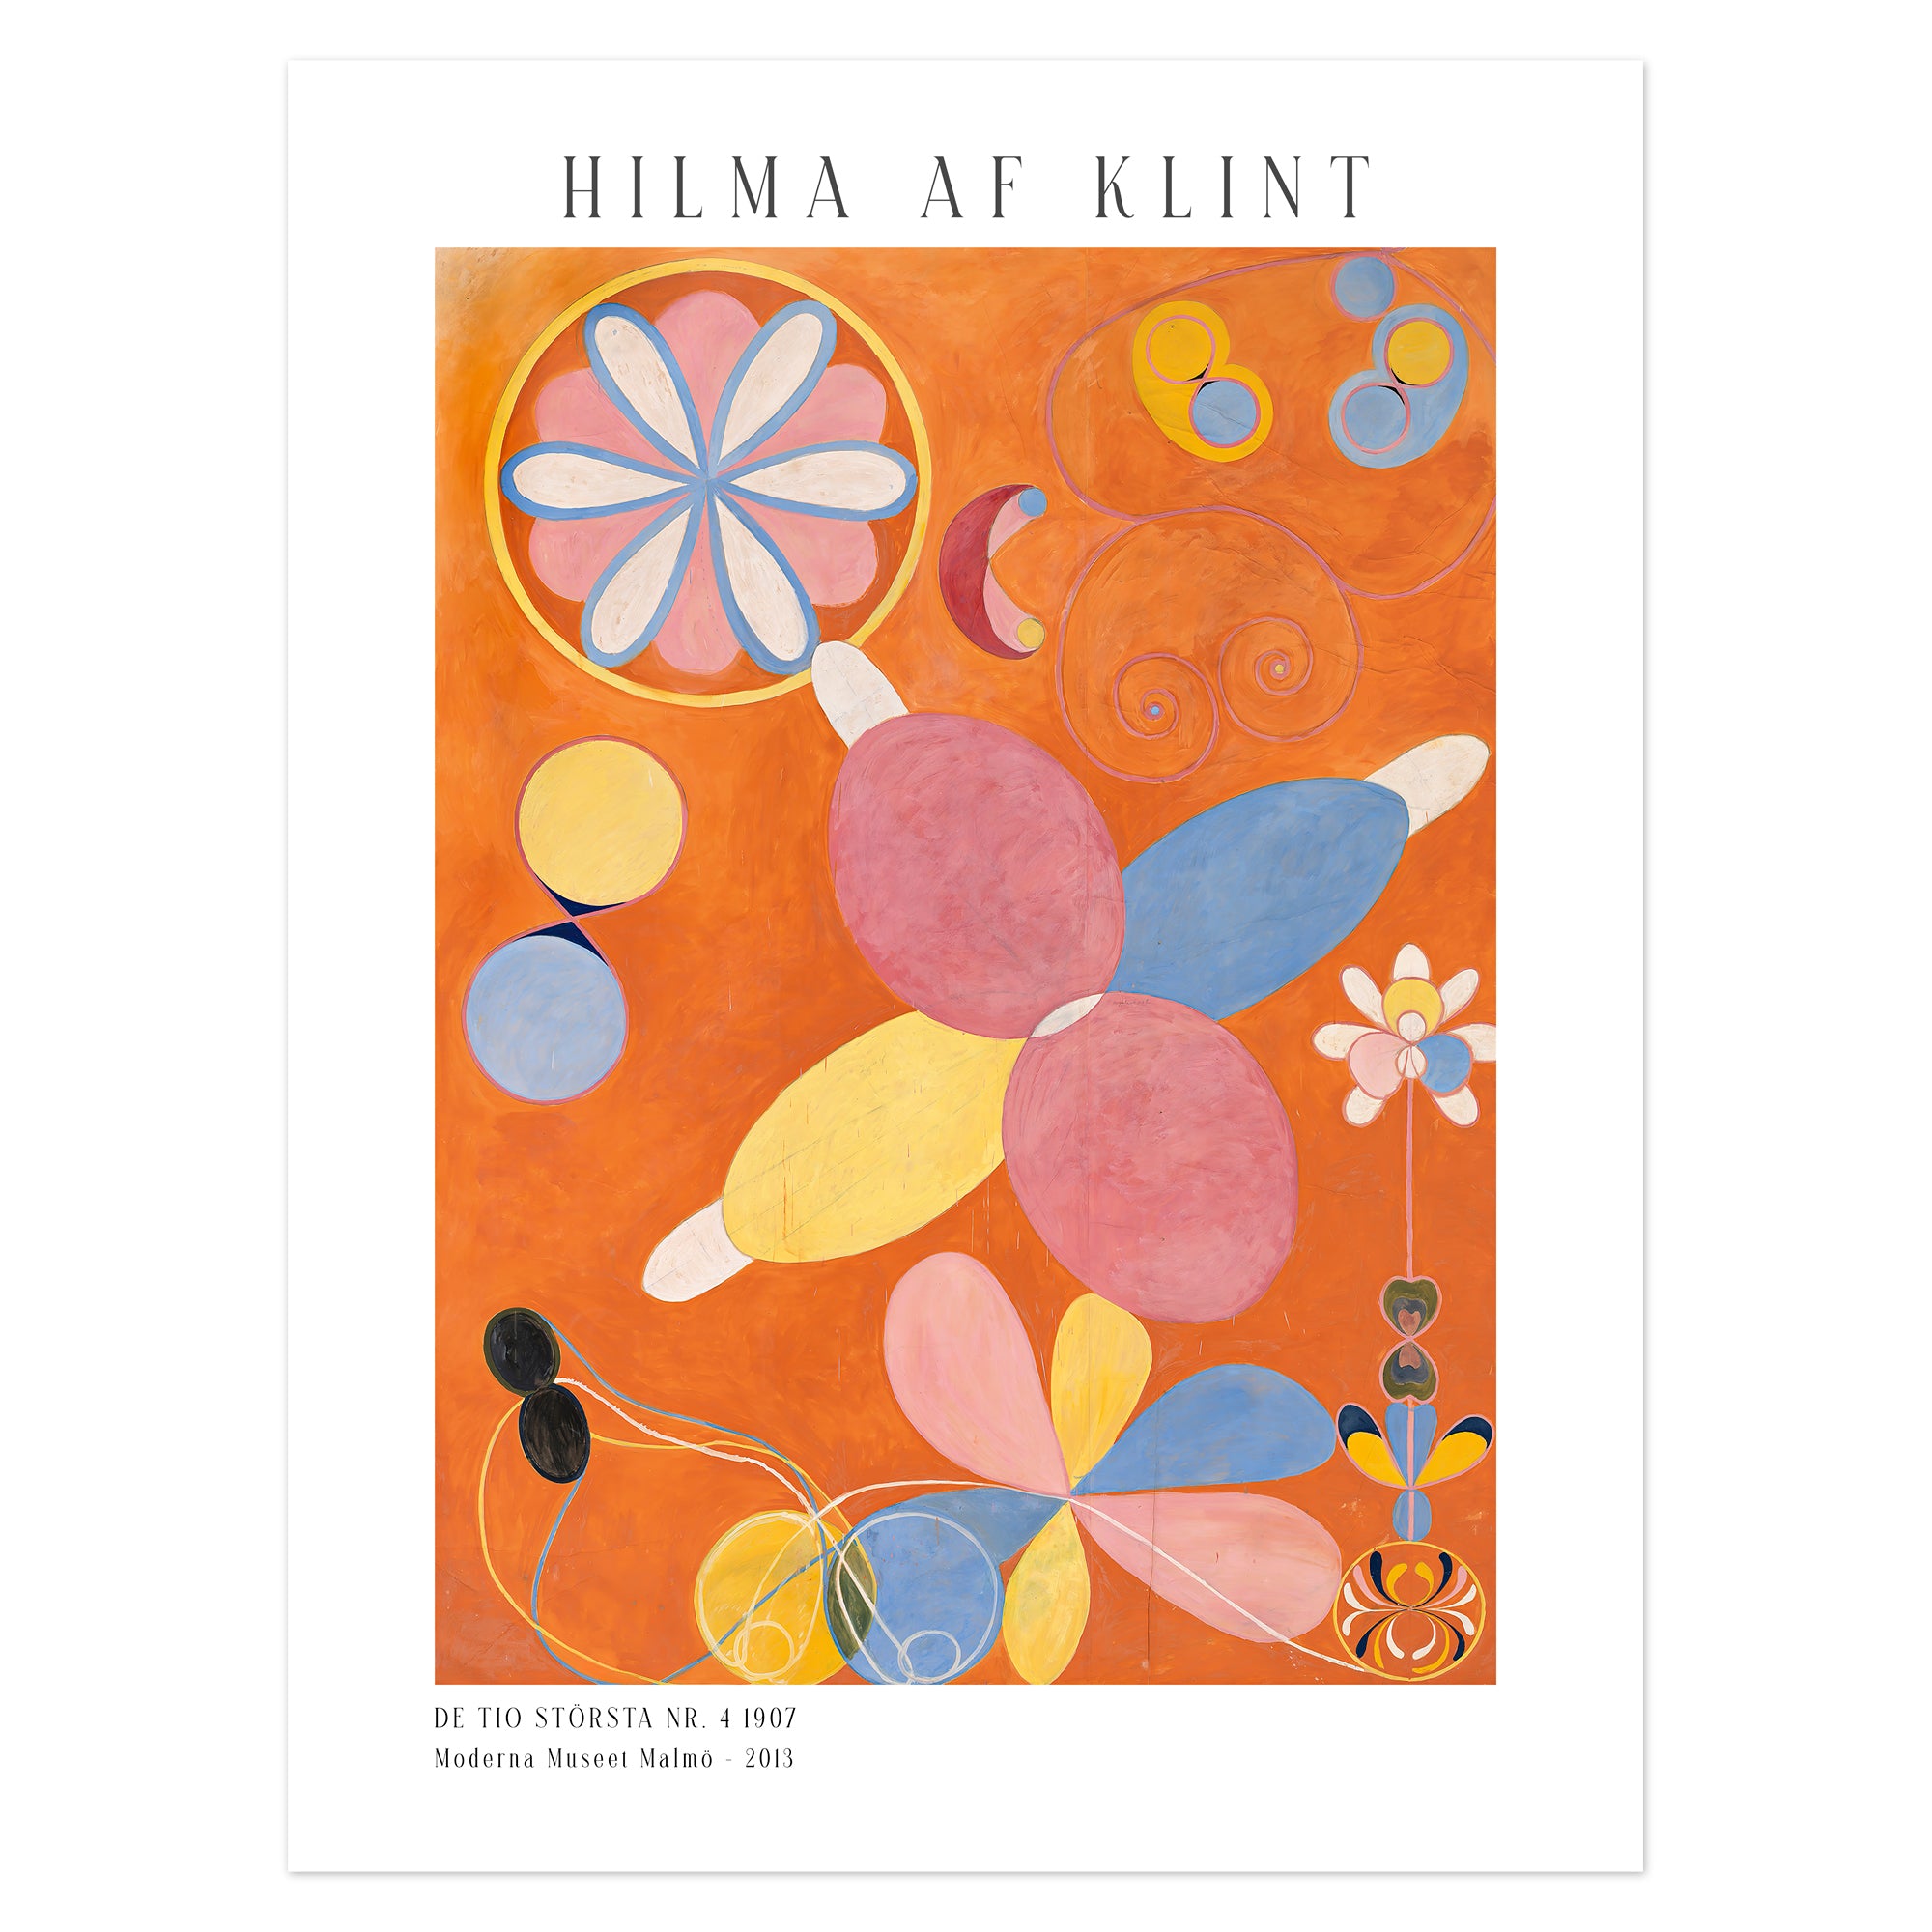 Hilma af Klint Poster - De tio största nr. 4